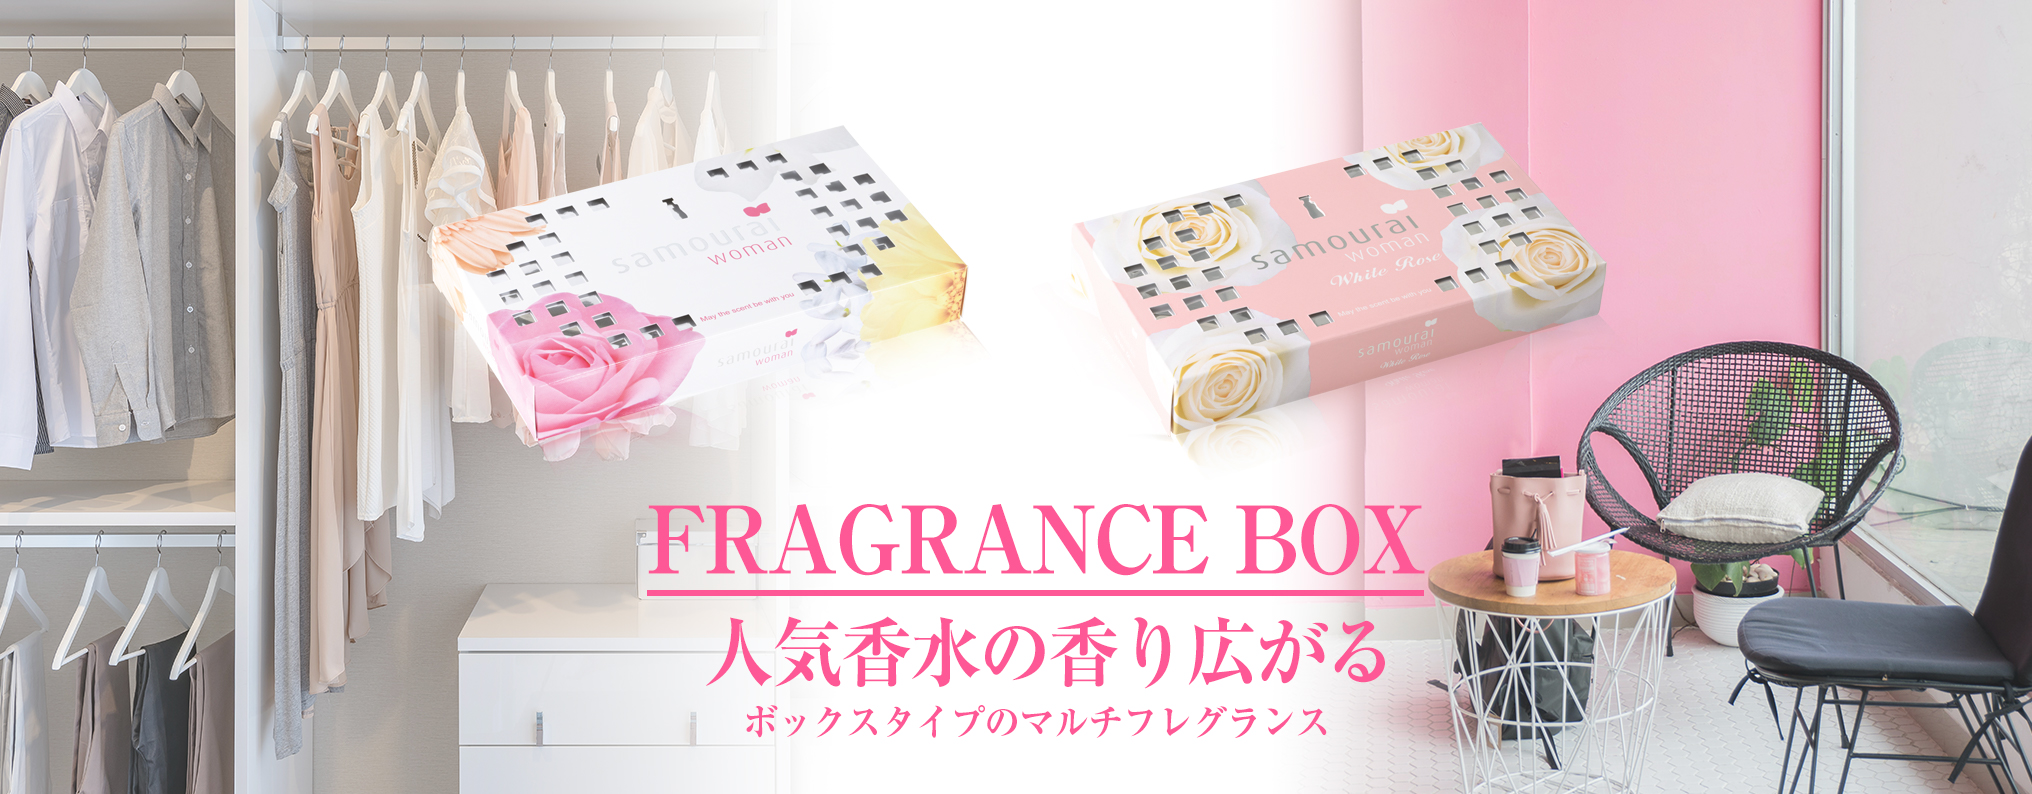 サムライウーマン | フレグランス ボックス ・ Fragrance Box